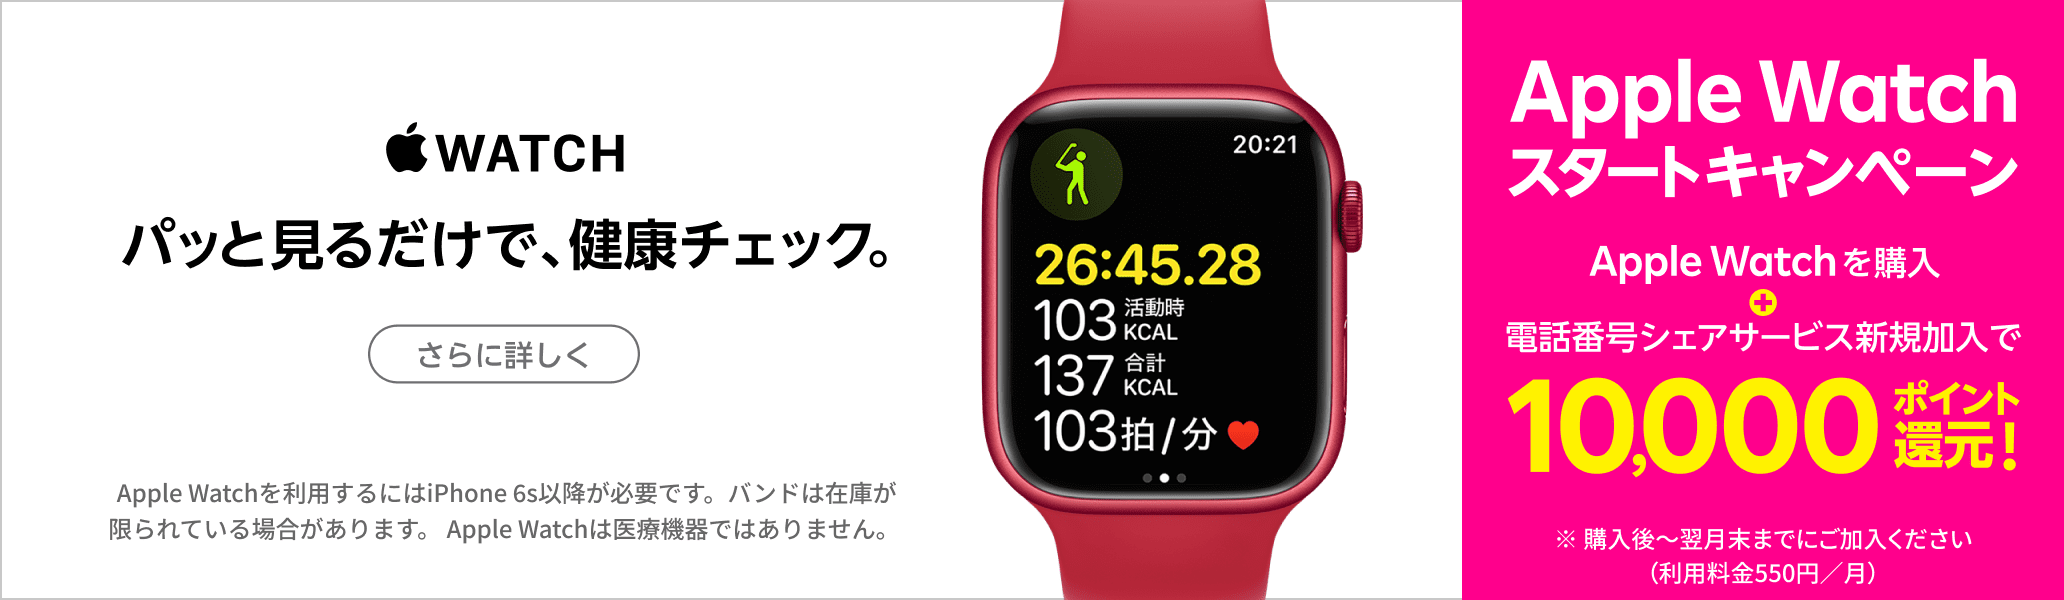 Apple Watchスタートキャンペーン Apple Watchを購入+電話番号シェアサービス新規加入で10,000ポイント還元! ※ 購入後～翌月末までにご加入ください（利用料金550円／月）